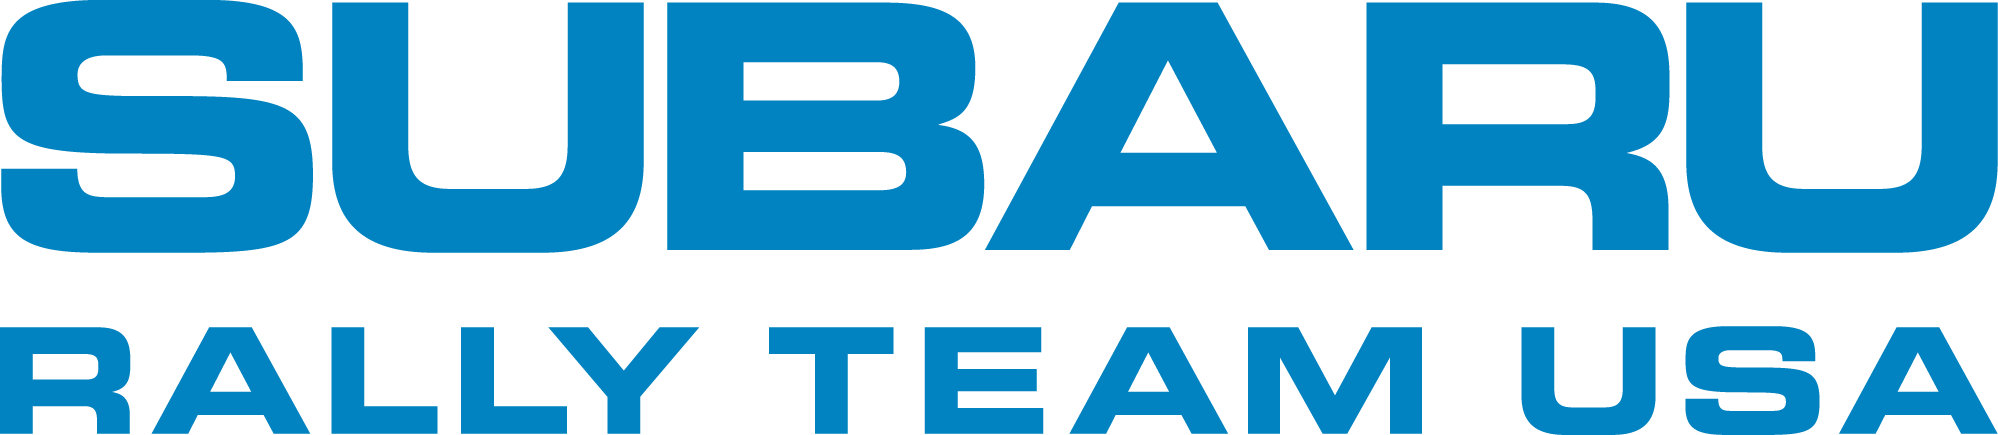 Subaru Rally Logo - Subaru Rally Team & Greet May 30 2018. Blaise Alexander Subaru